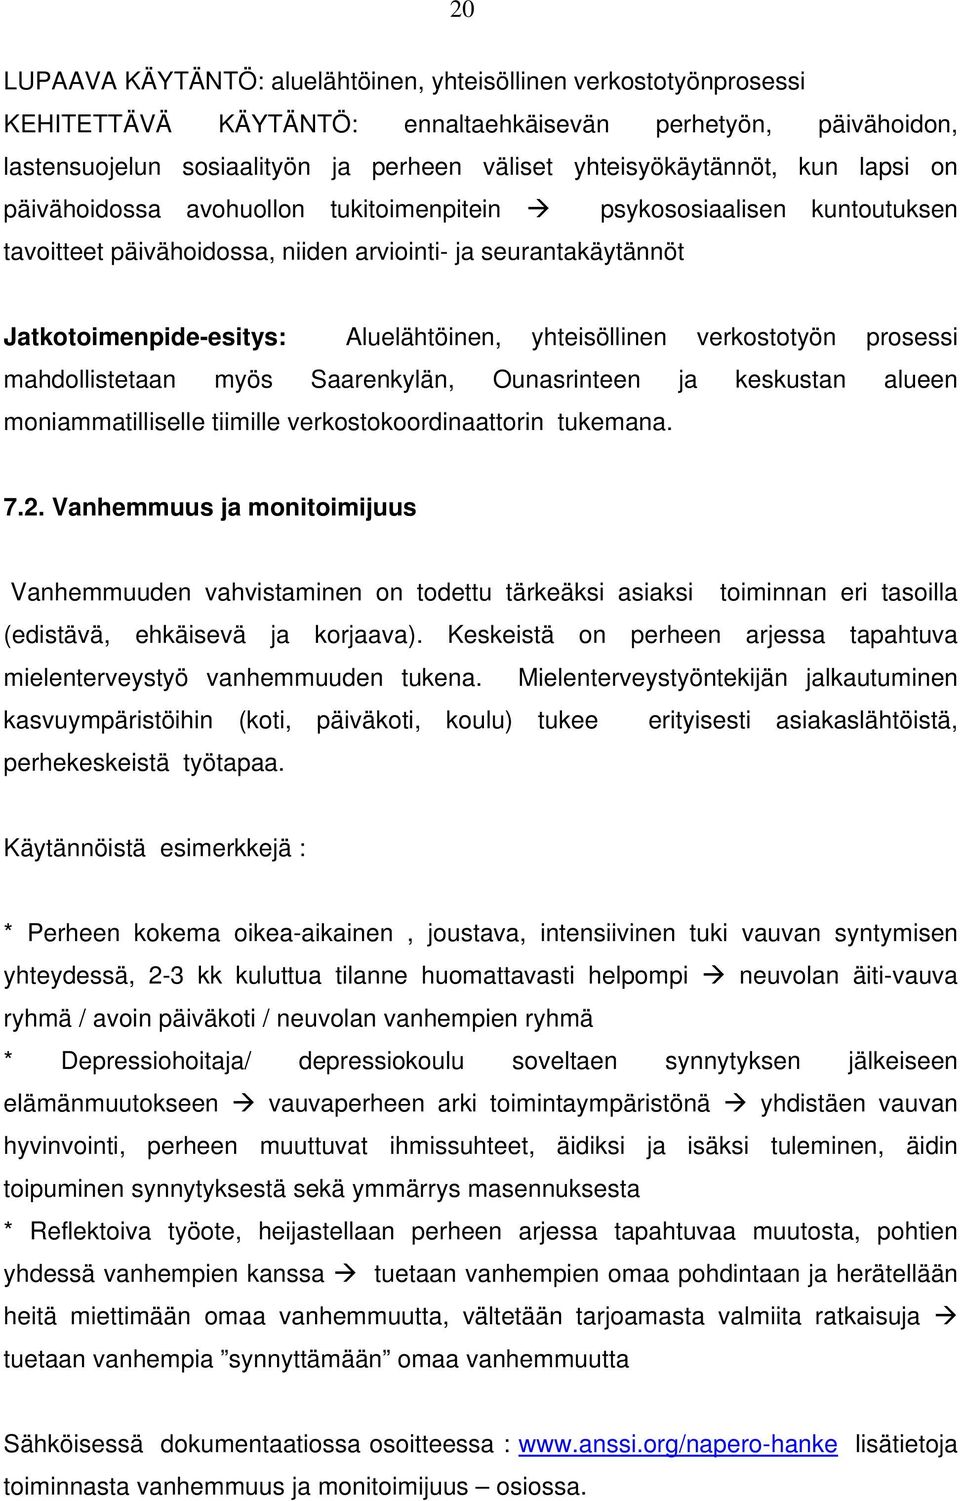 Aluelähtöinen, yhteisöllinen verkostotyön prosessi mahdollistetaan myös Saarenkylän, Ounasrinteen ja keskustan alueen moniammatilliselle tiimille verkostokoordinaattorin tukemana. 7.2.